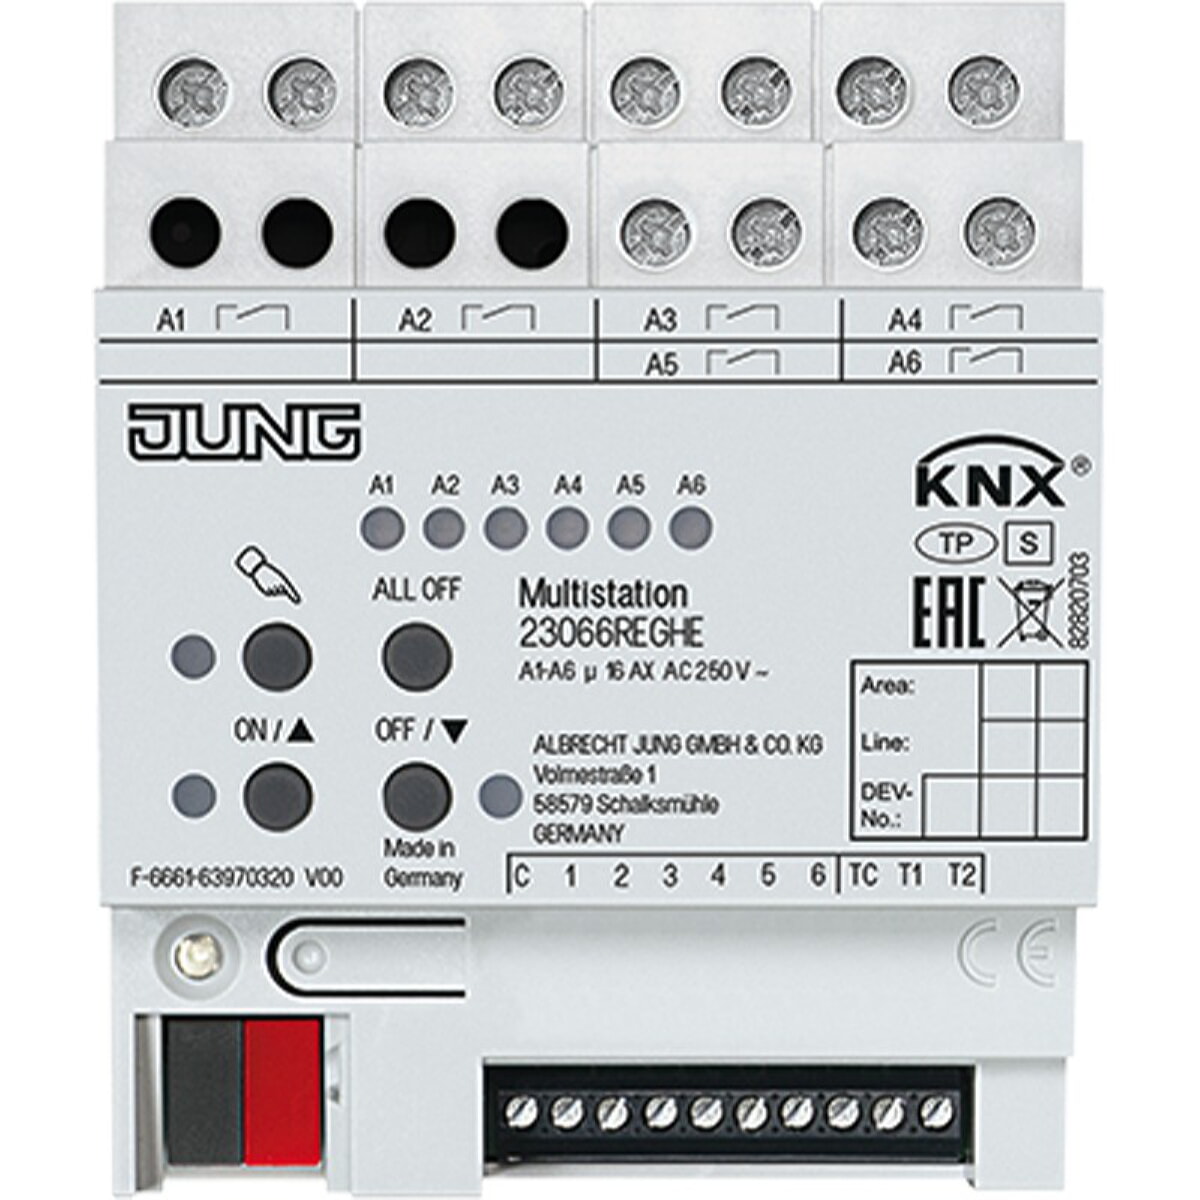 Jung KNX Multistation, AC 250 V ~ 23066REGHE